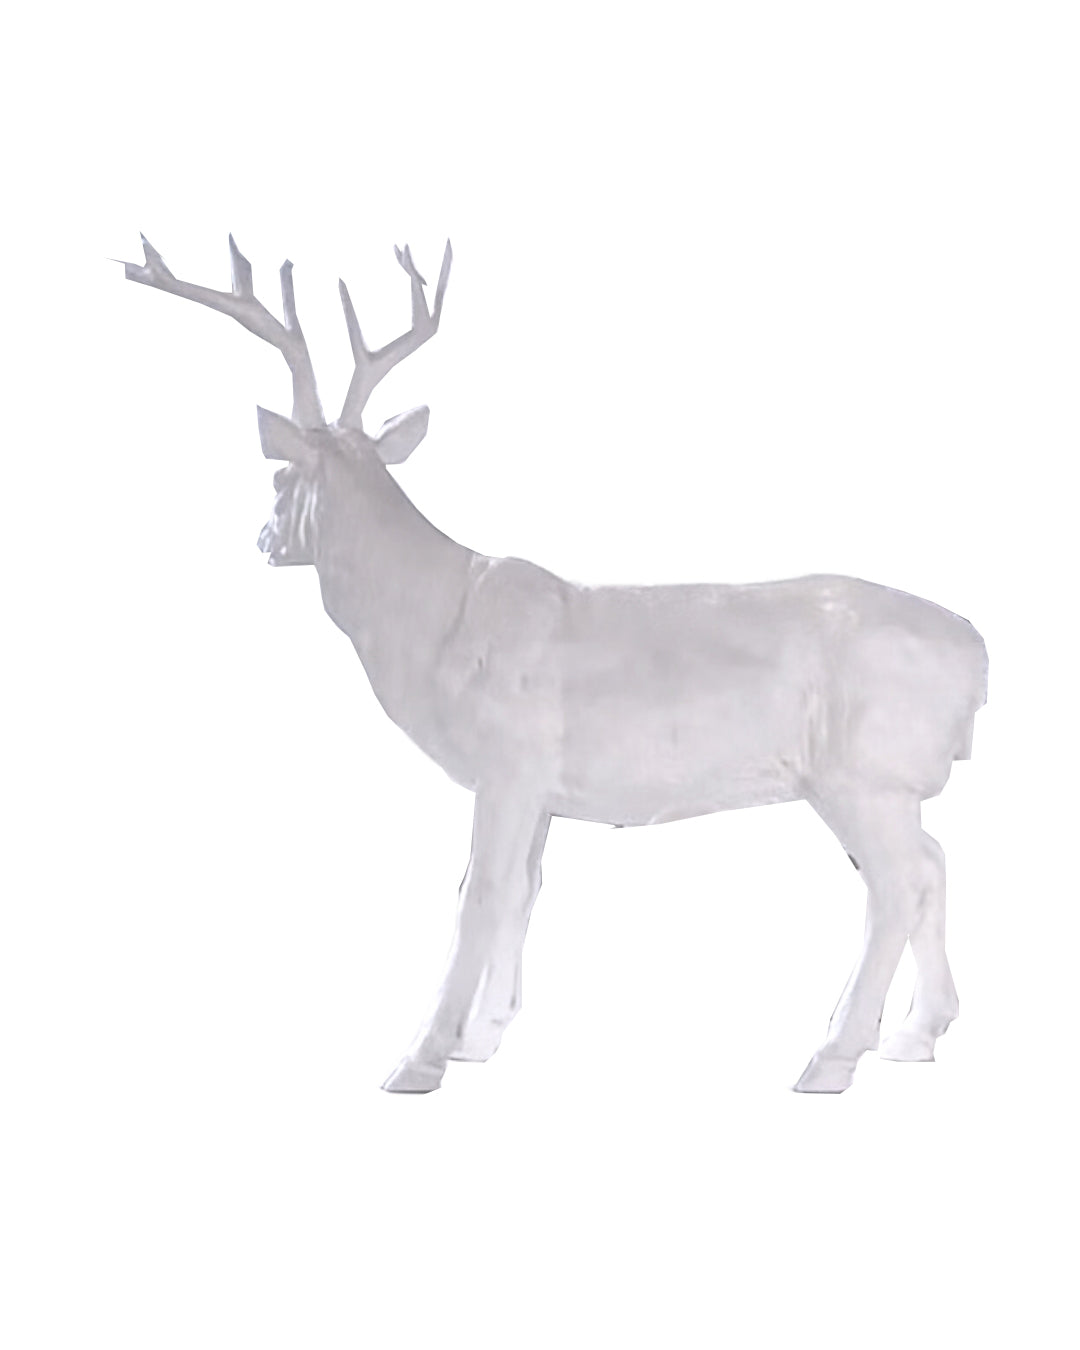 Deer Statues